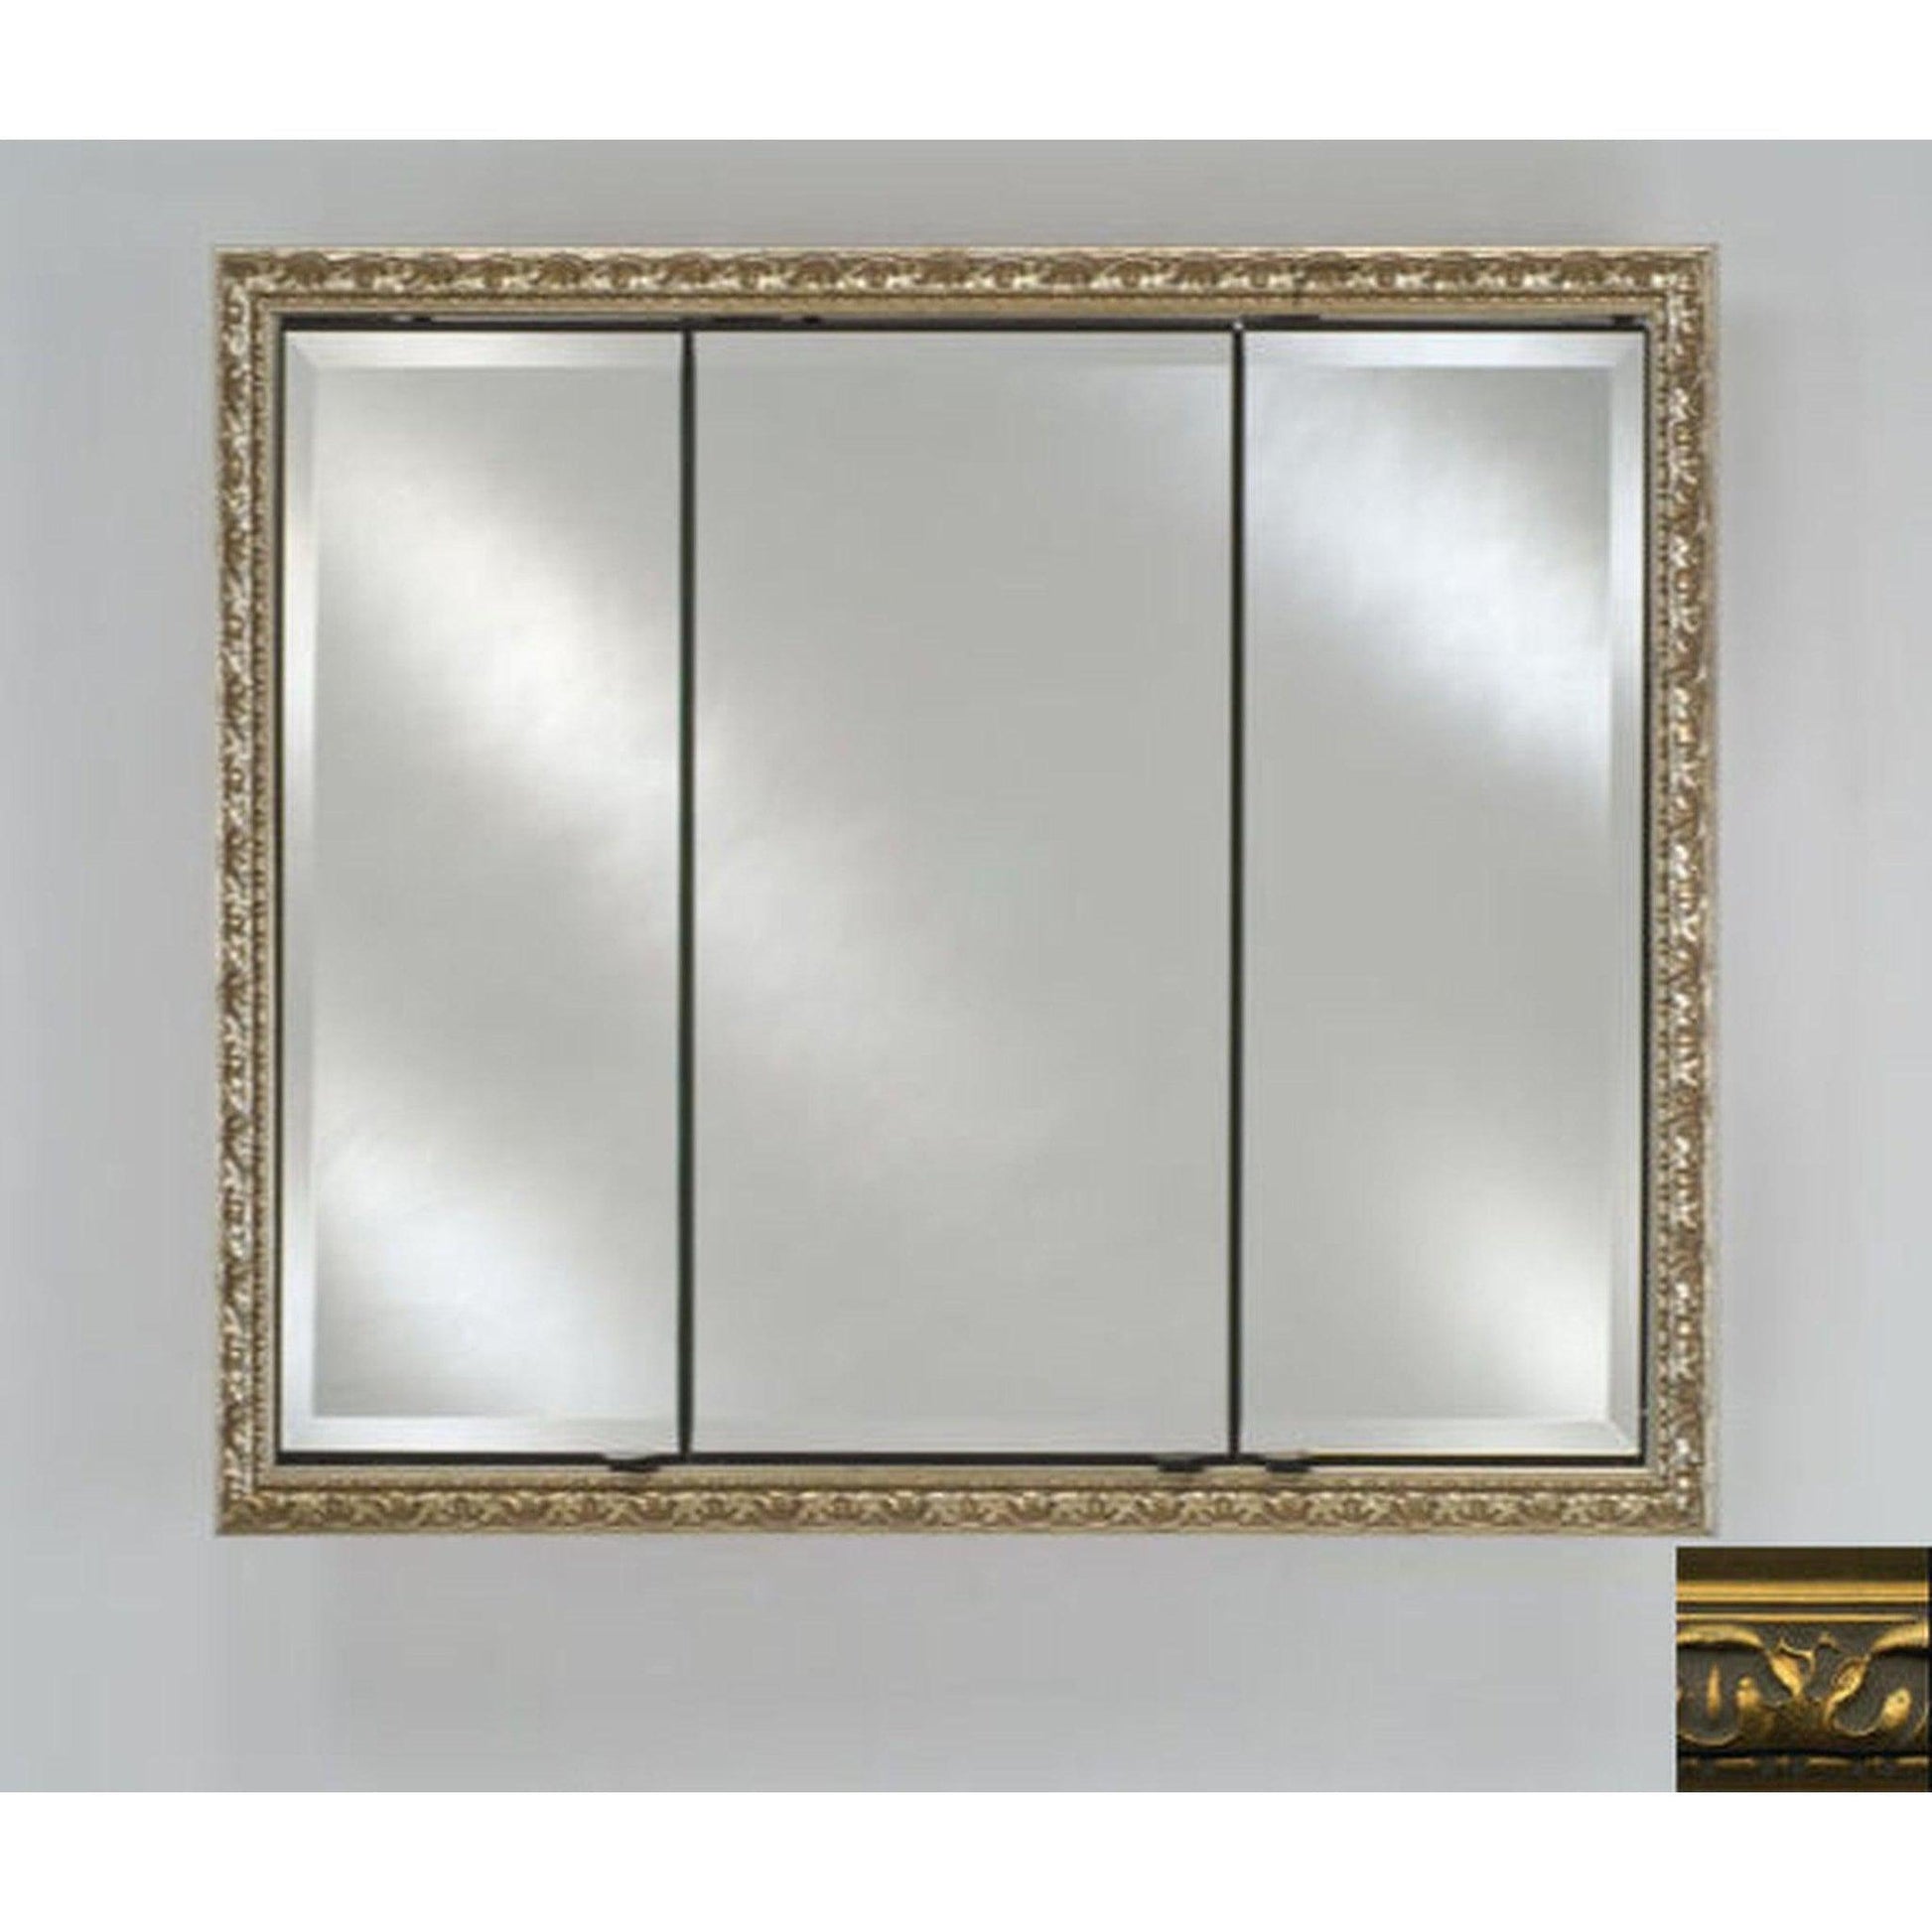 Afina Signature 44" x 30" Valencia Antique Gold Recessed Triple Door Medicine Cabinet With Beveled Edge Mirror